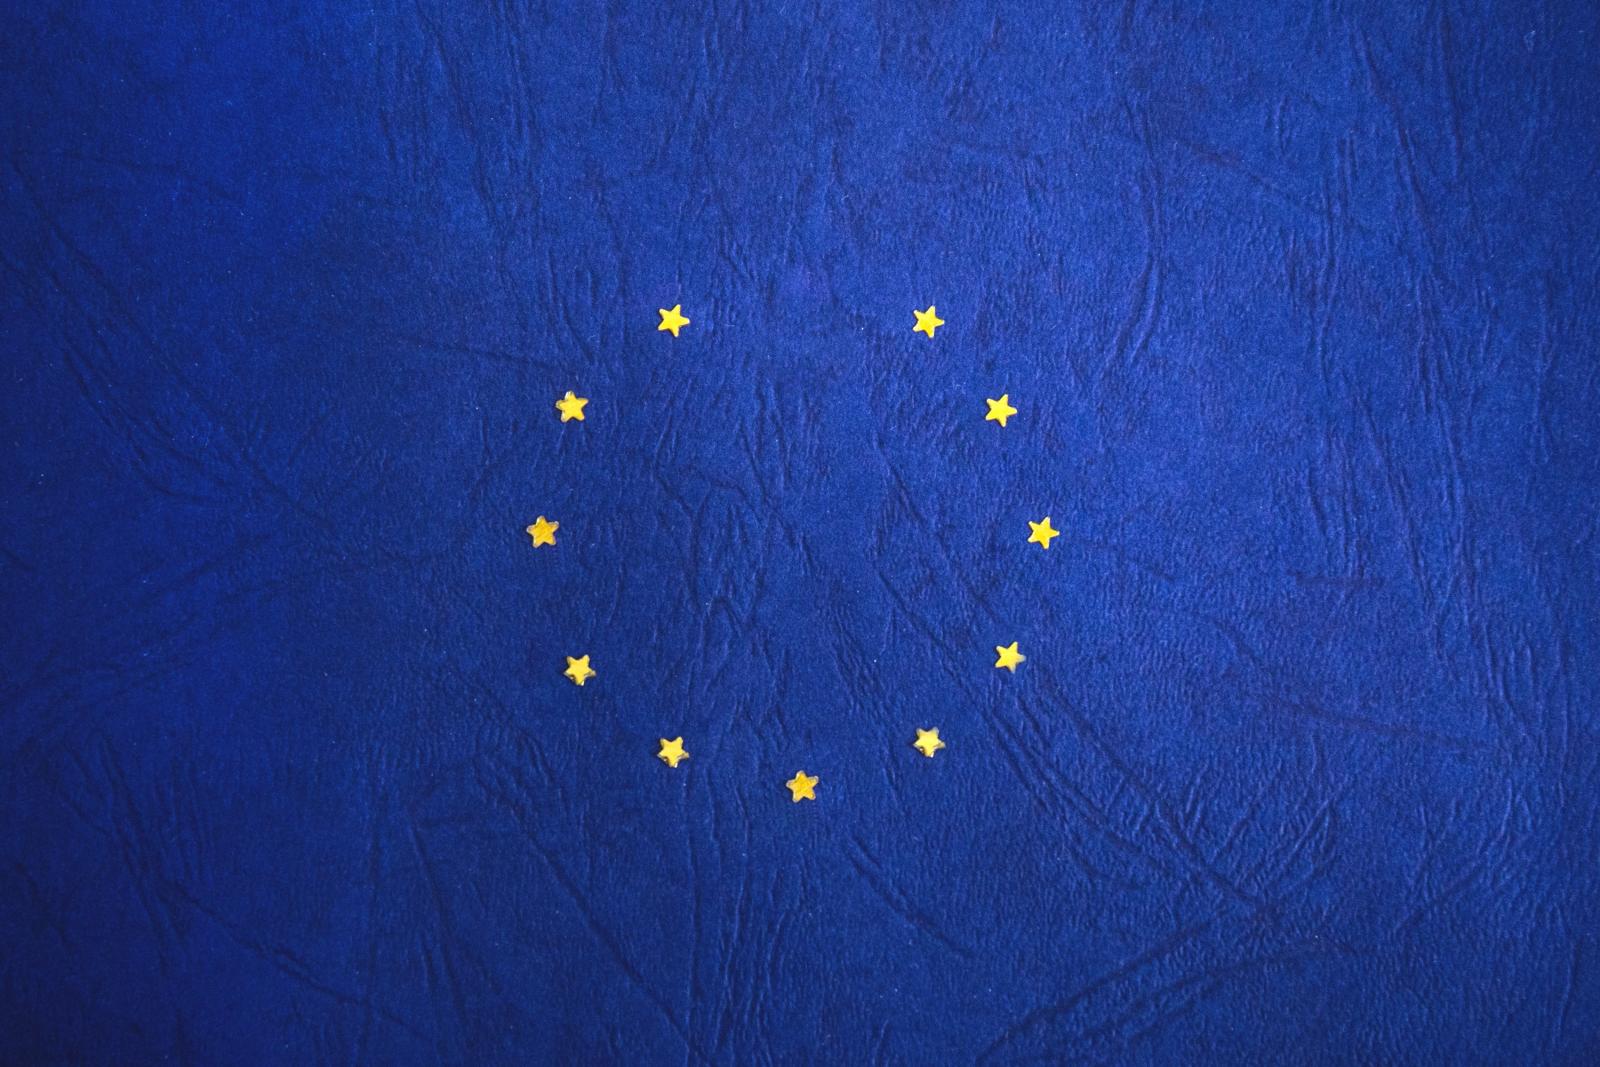 Brexit EU flag. Photo credit: Pexels